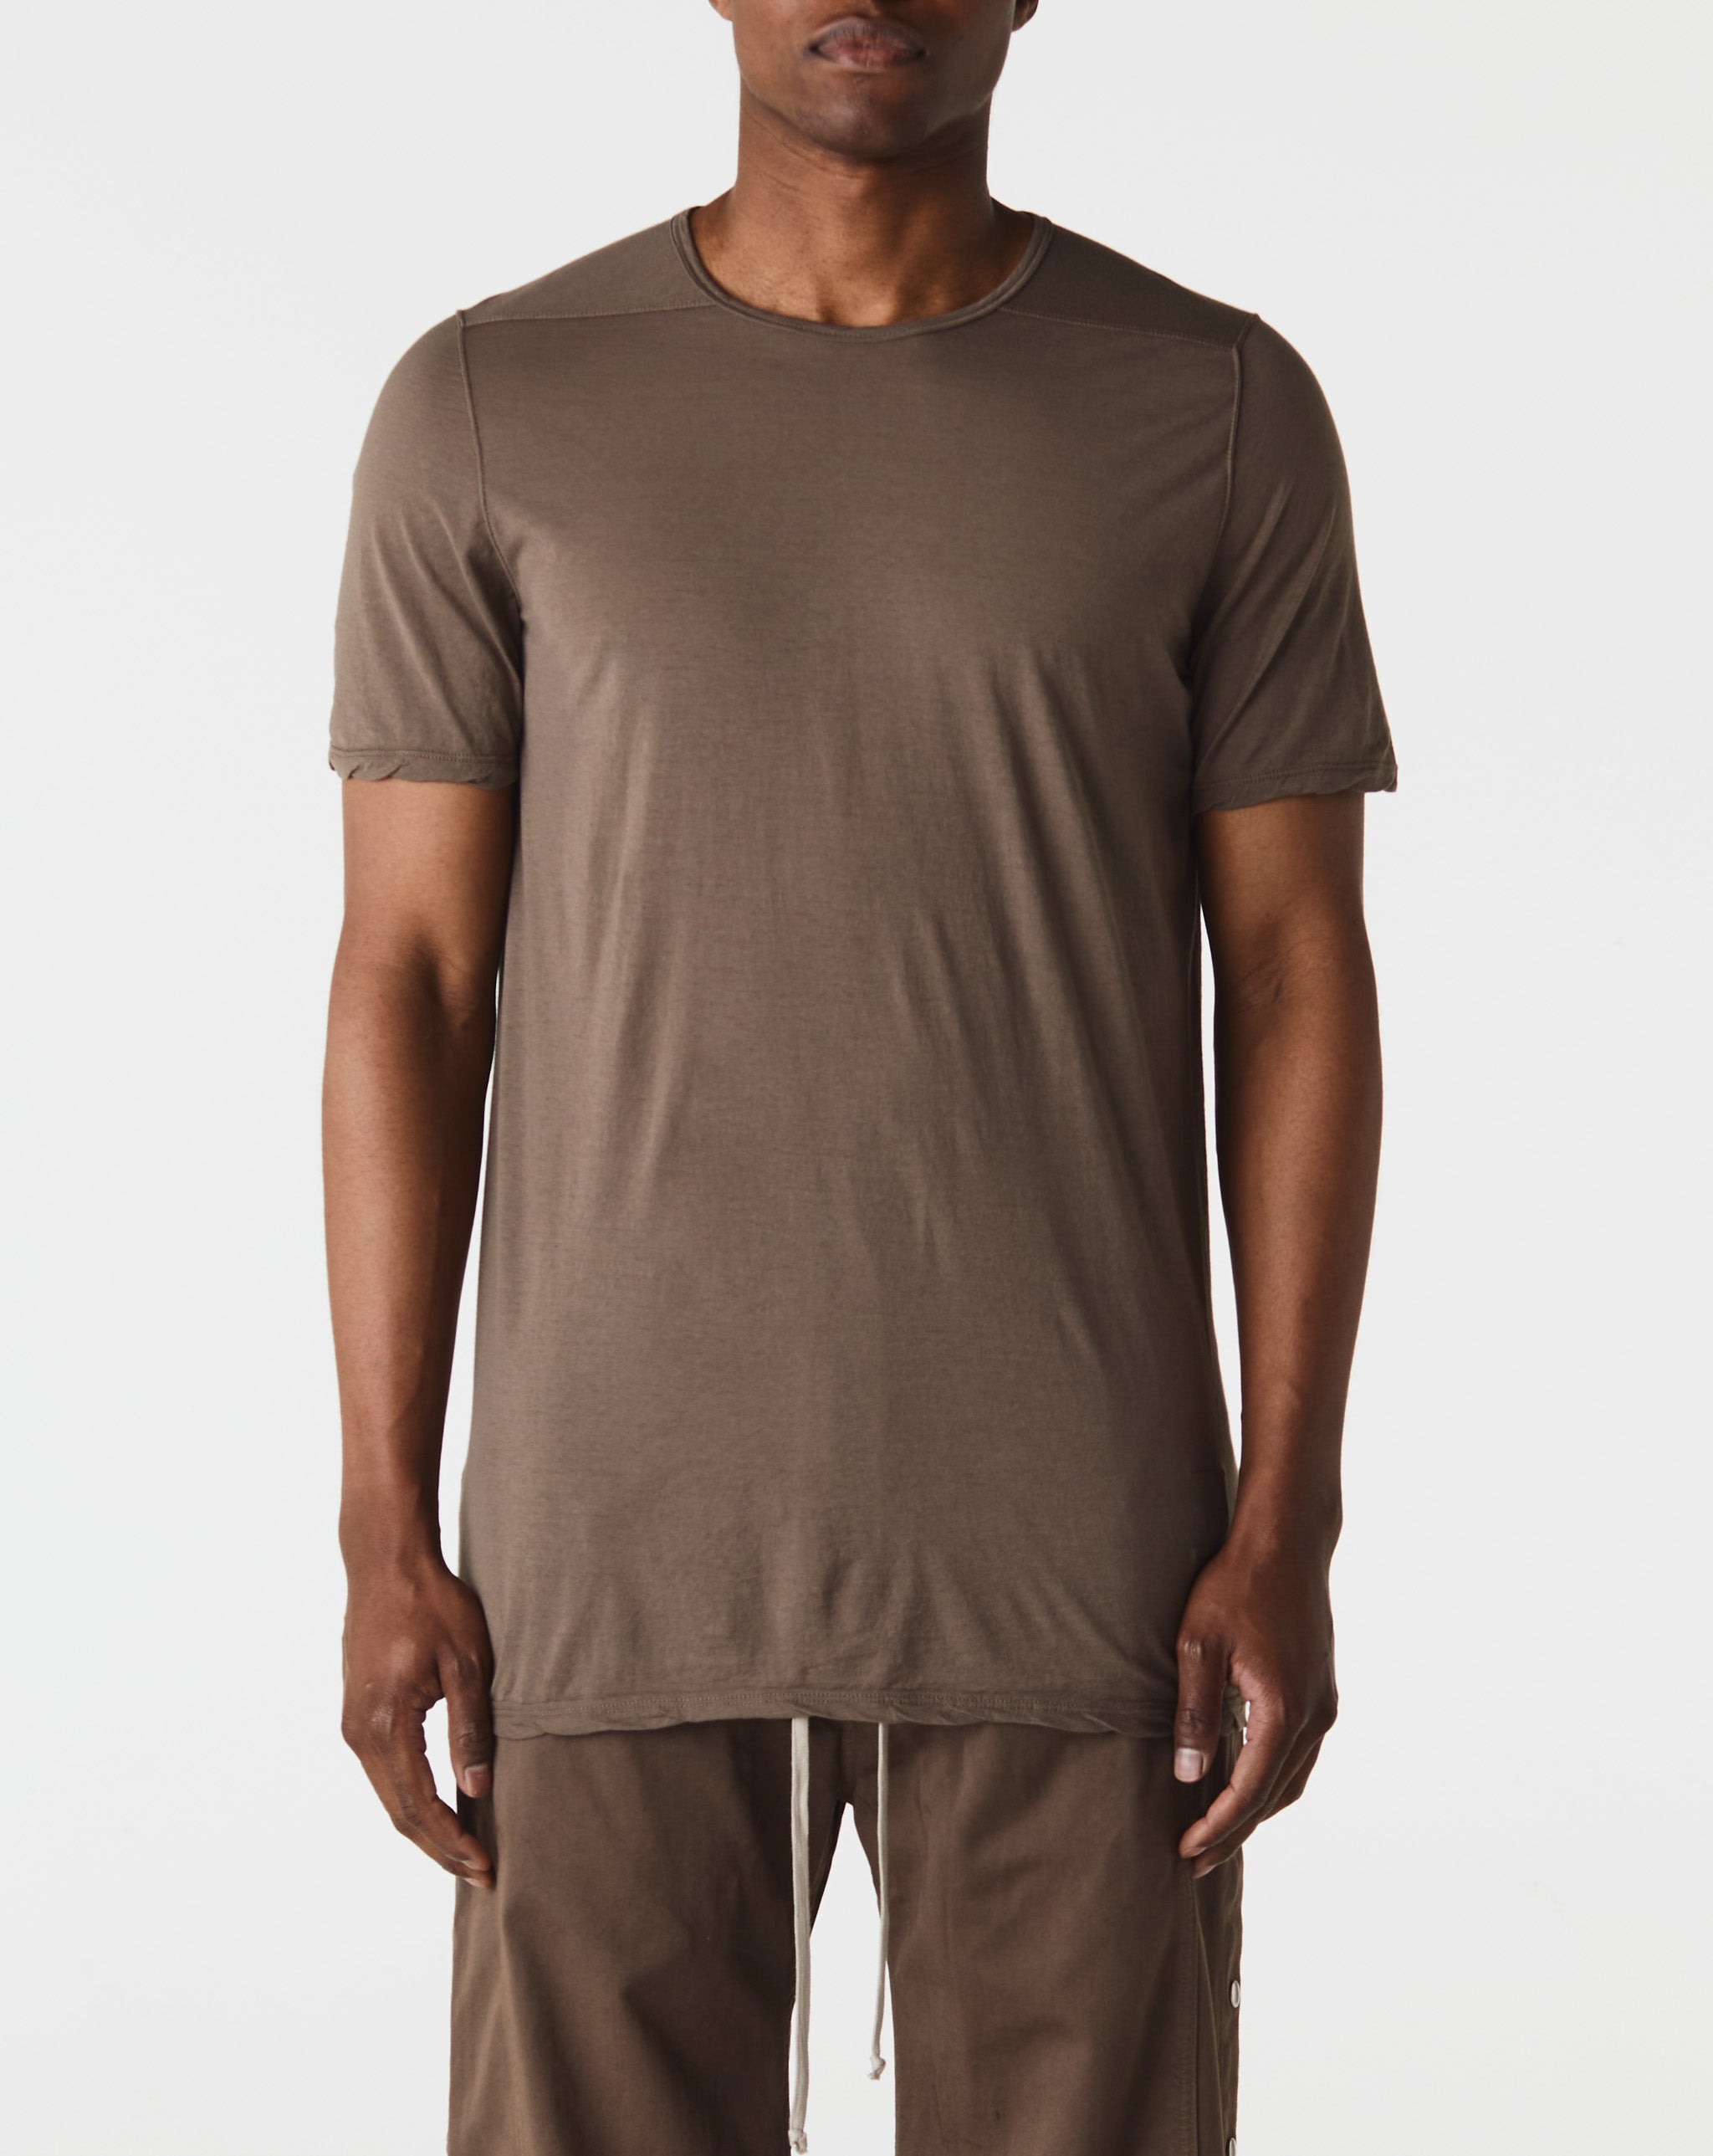 fog applique clothing 3d silicon no vat Level T-Shirt  - Cheap Urlfreeze Jordan outlet